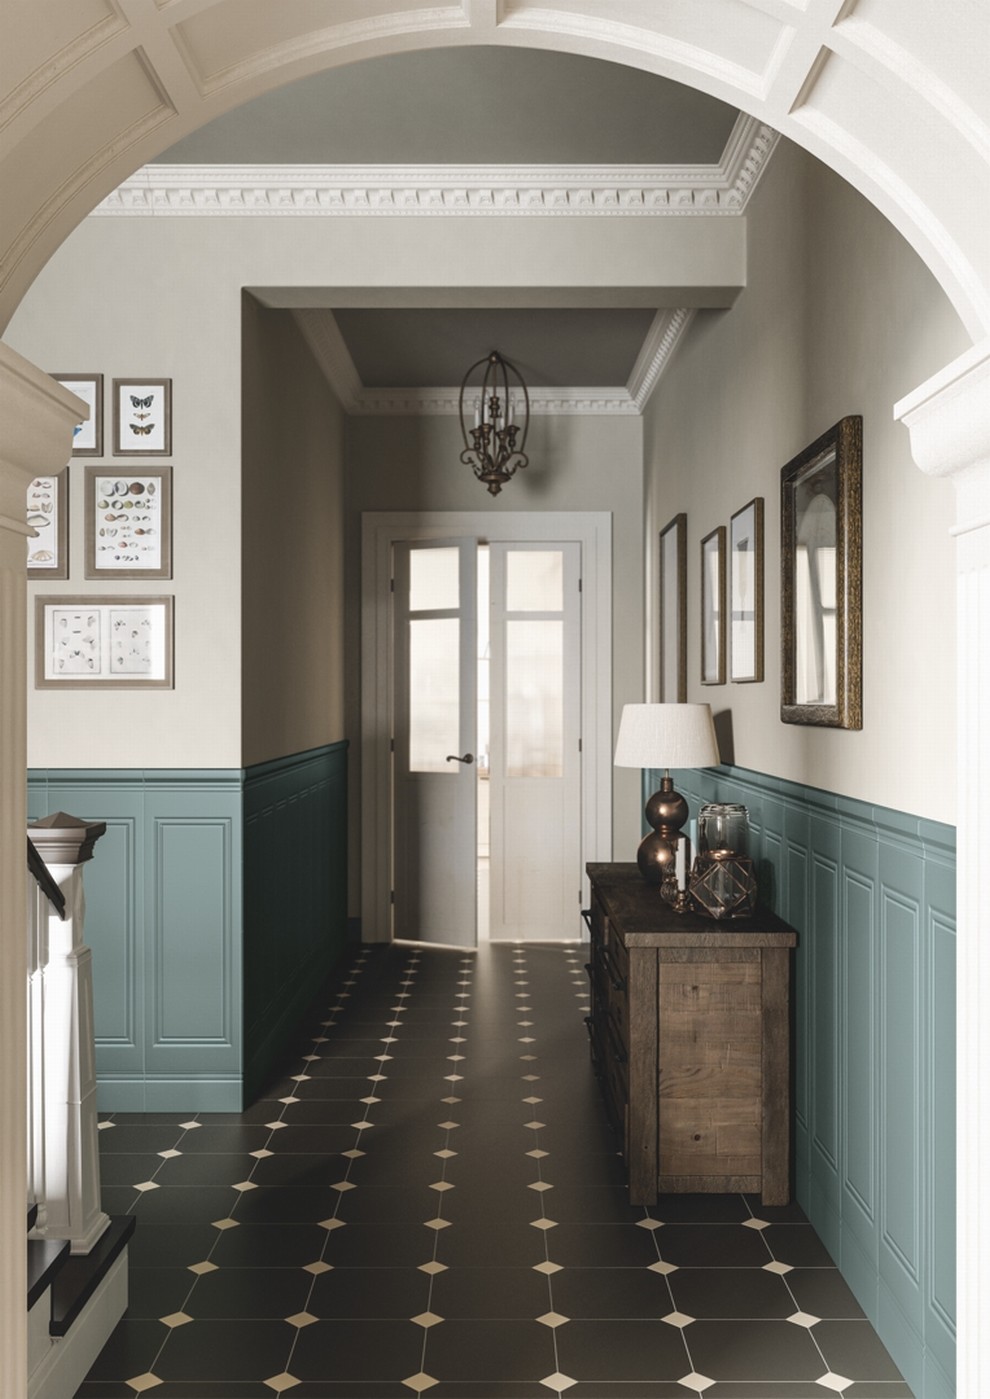  Pytki boazeryjne niebieskie na ciany korytarza - Grazia Ceramiche seria Elegance